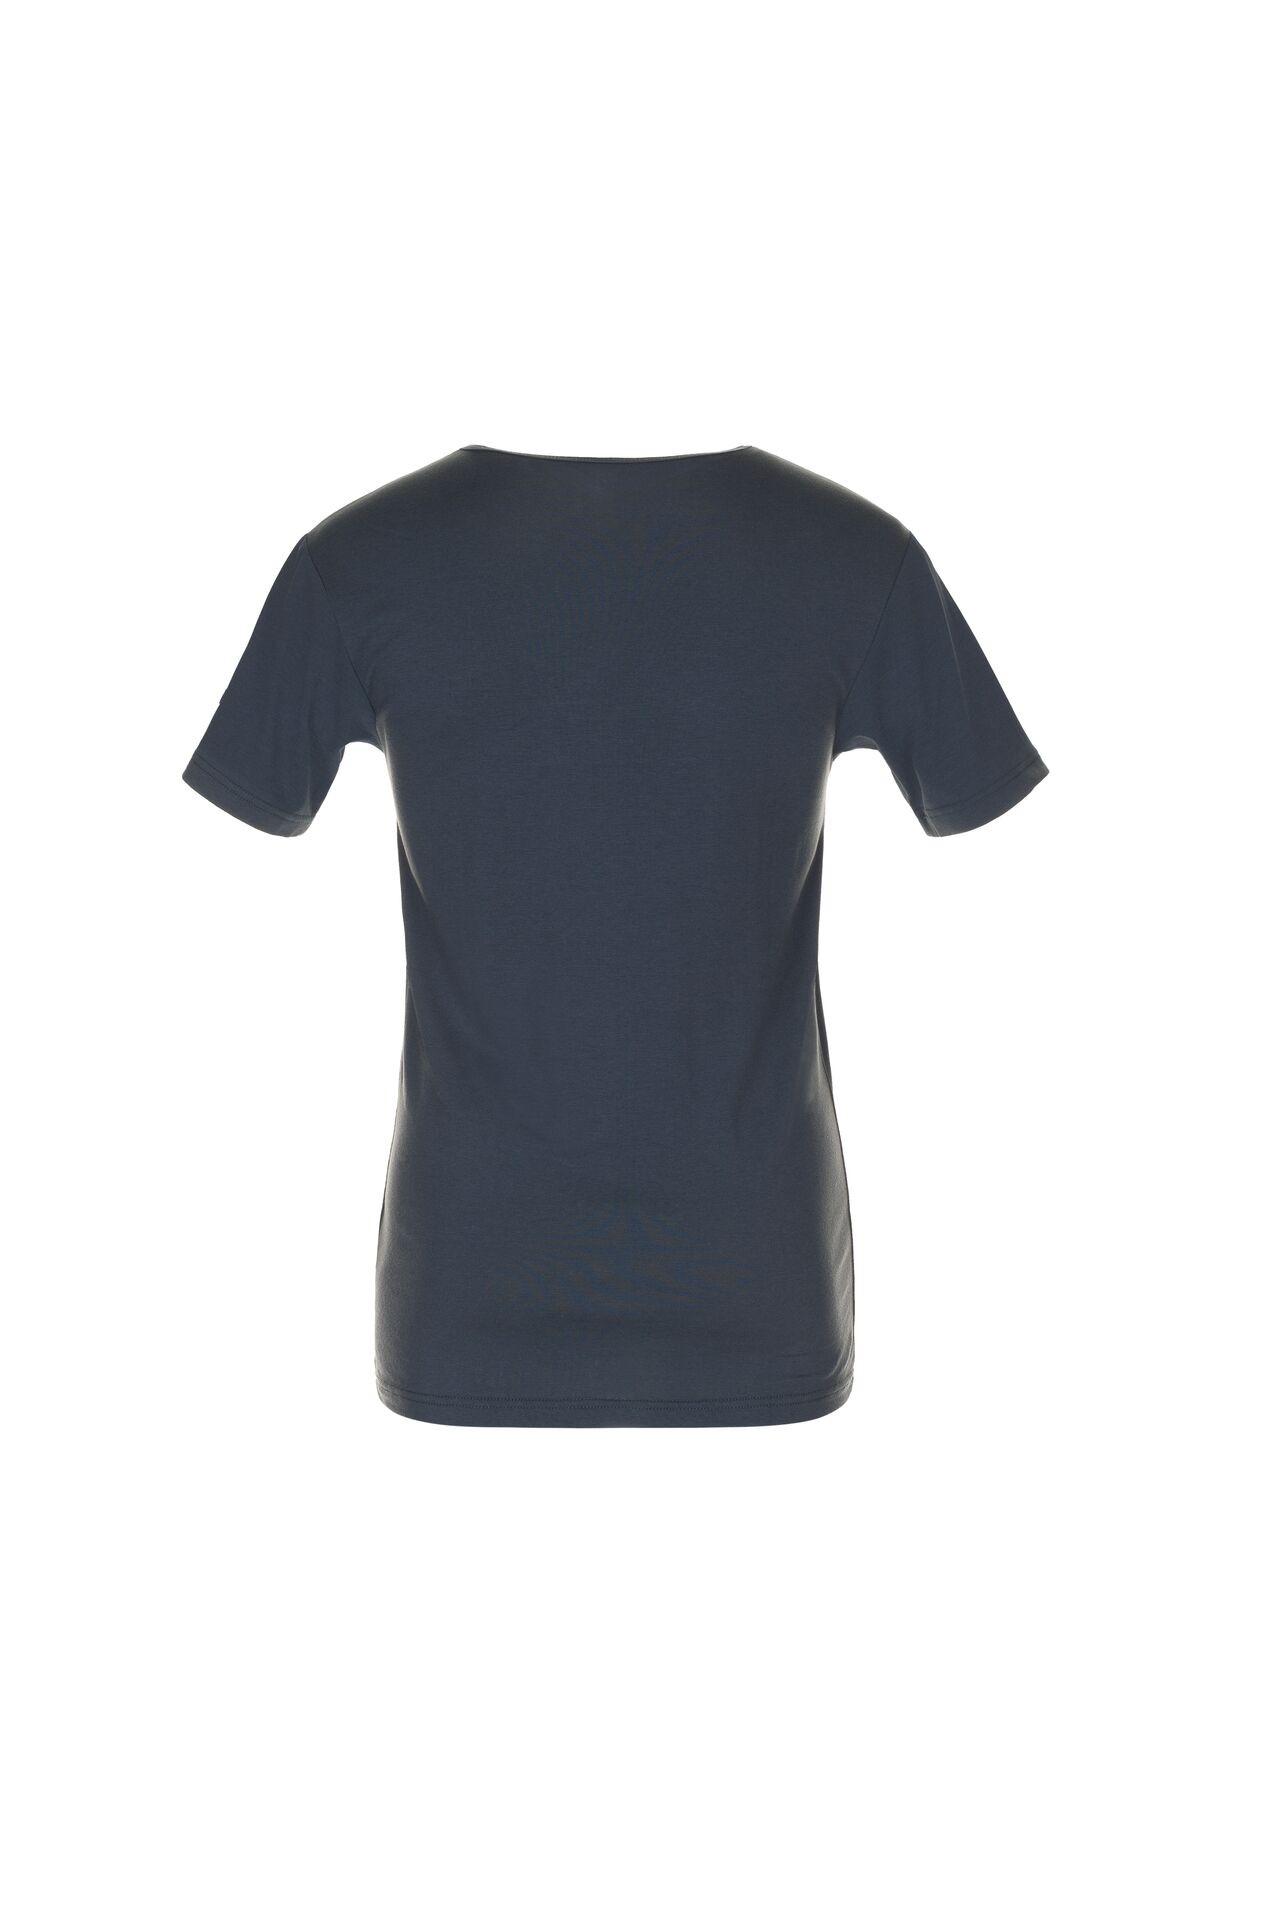 Planam® - Funktionsunterwäsche Shirt kurzarm